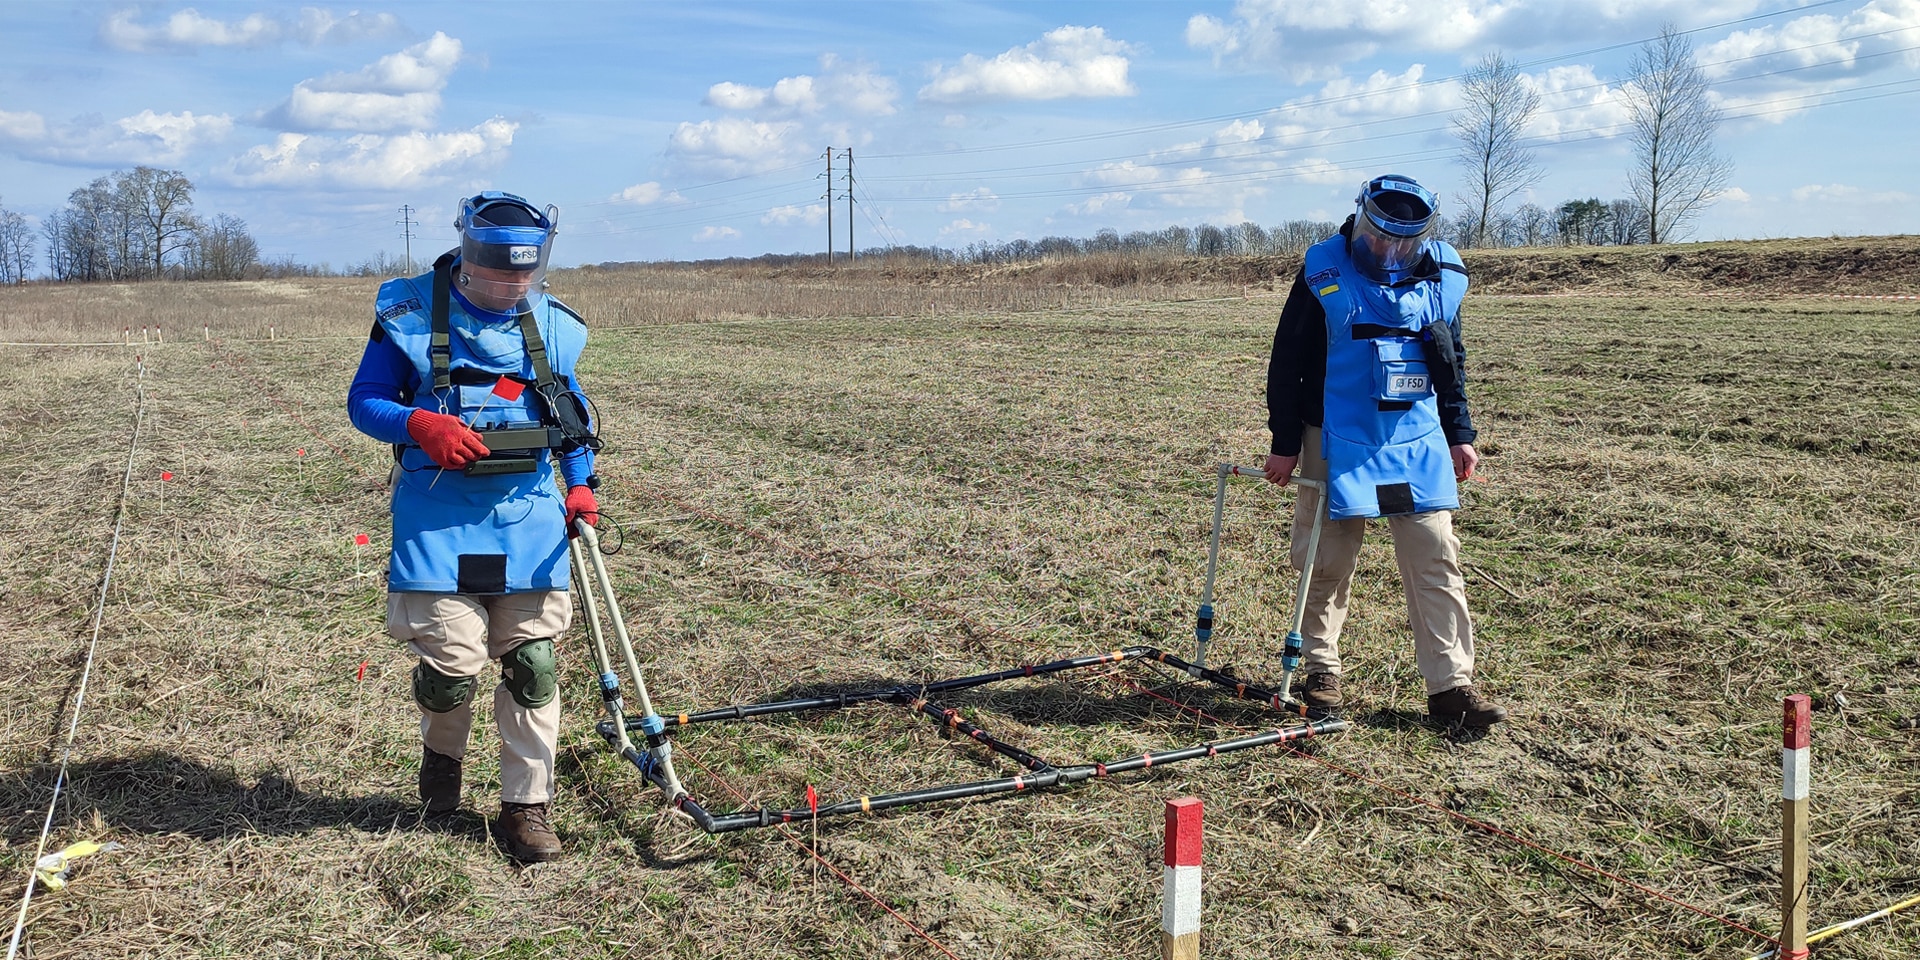 Deux hommes en tenue de protection travaillent au déminage d’un champ où se trouvent probablement des munitions.